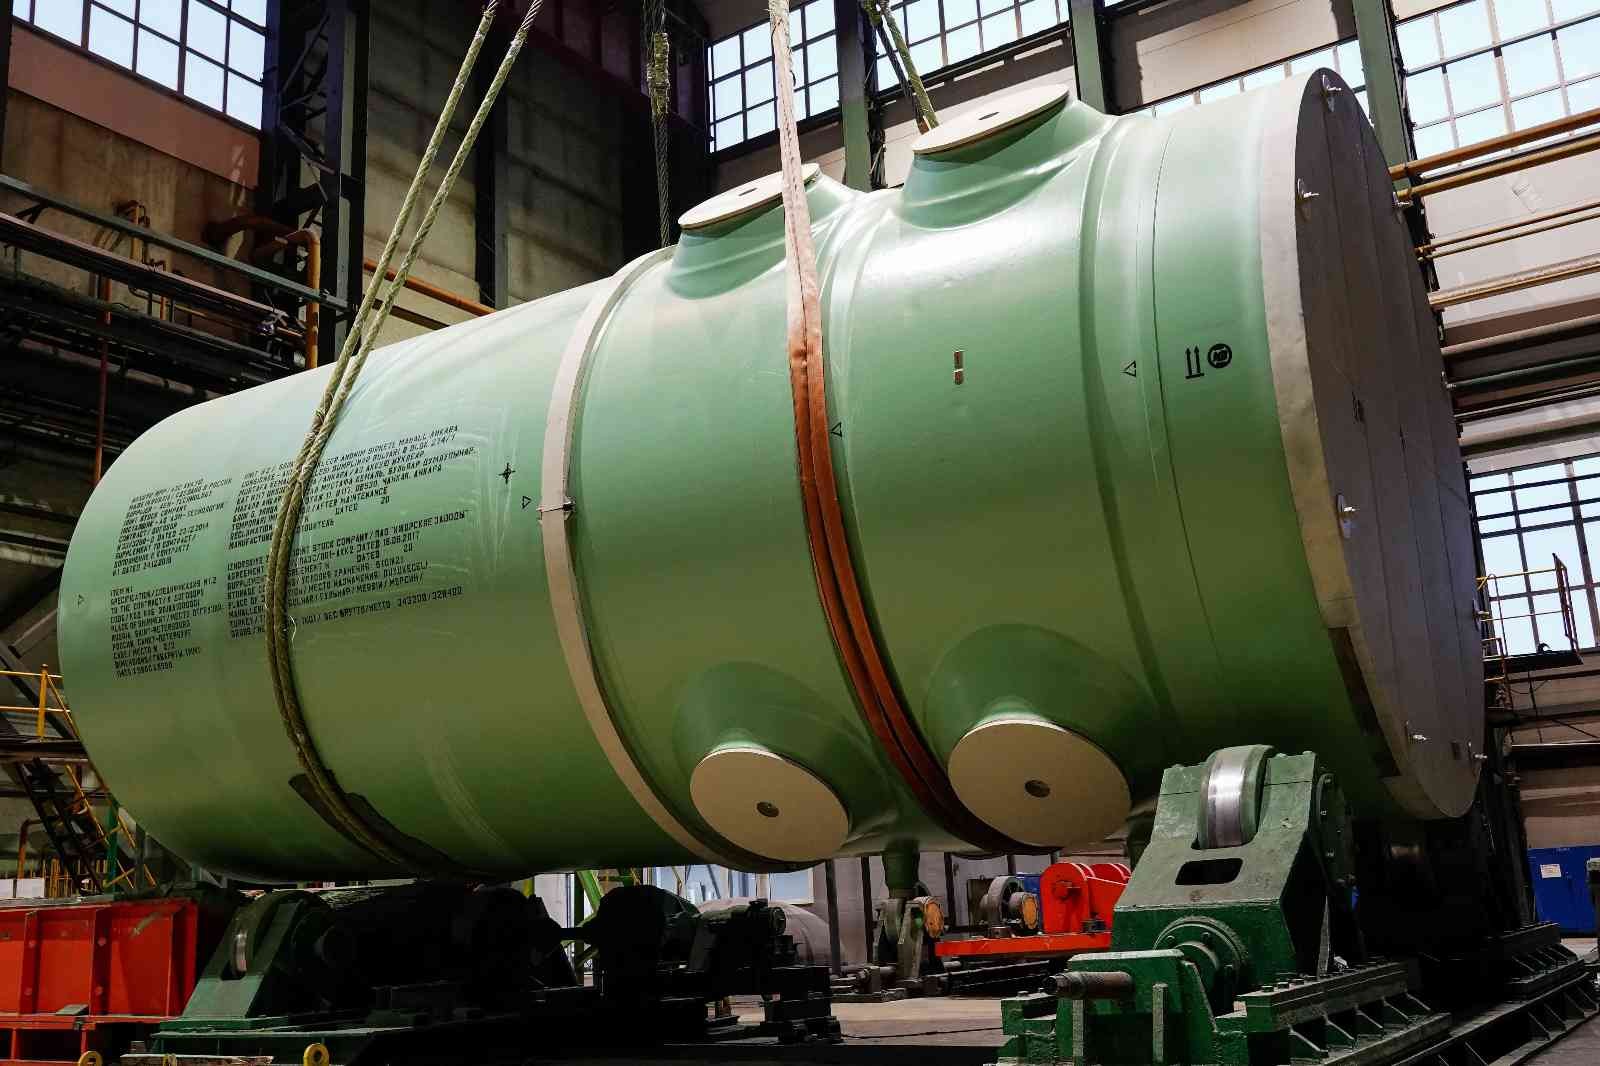 Akkuyu NGS’nin ikinci ünitesine ait reaktör basınç kabı Türkiye’ye gönderildi #mersin